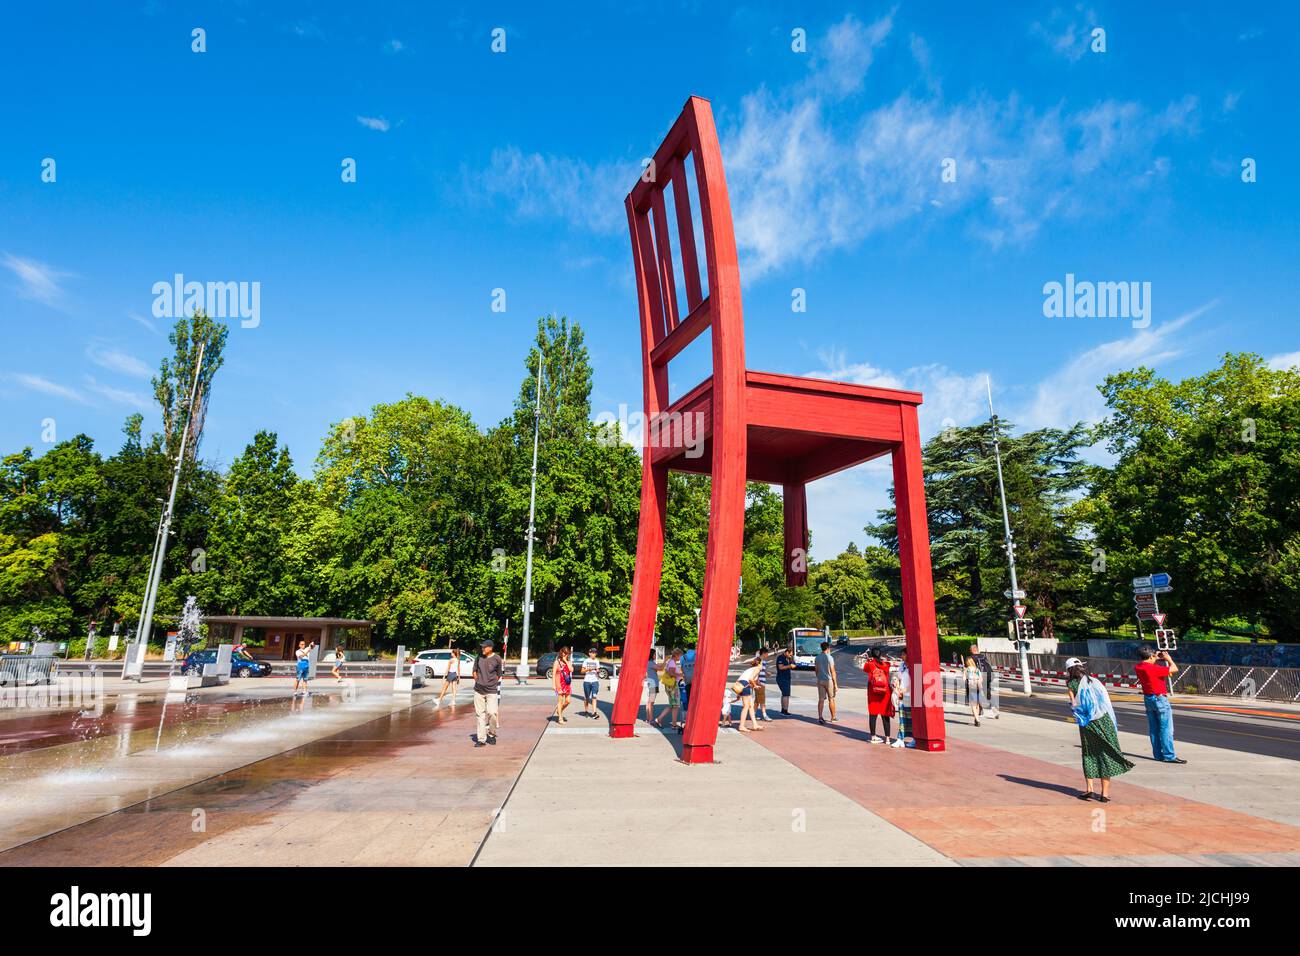 Genève, SUISSE - Le 20 juillet 2019 : Rupture de la chaise ou chaise Cassee est une sculpture en bois par l'artiste suisse Daniel Berset et Louis Geneve à Genève Banque D'Images